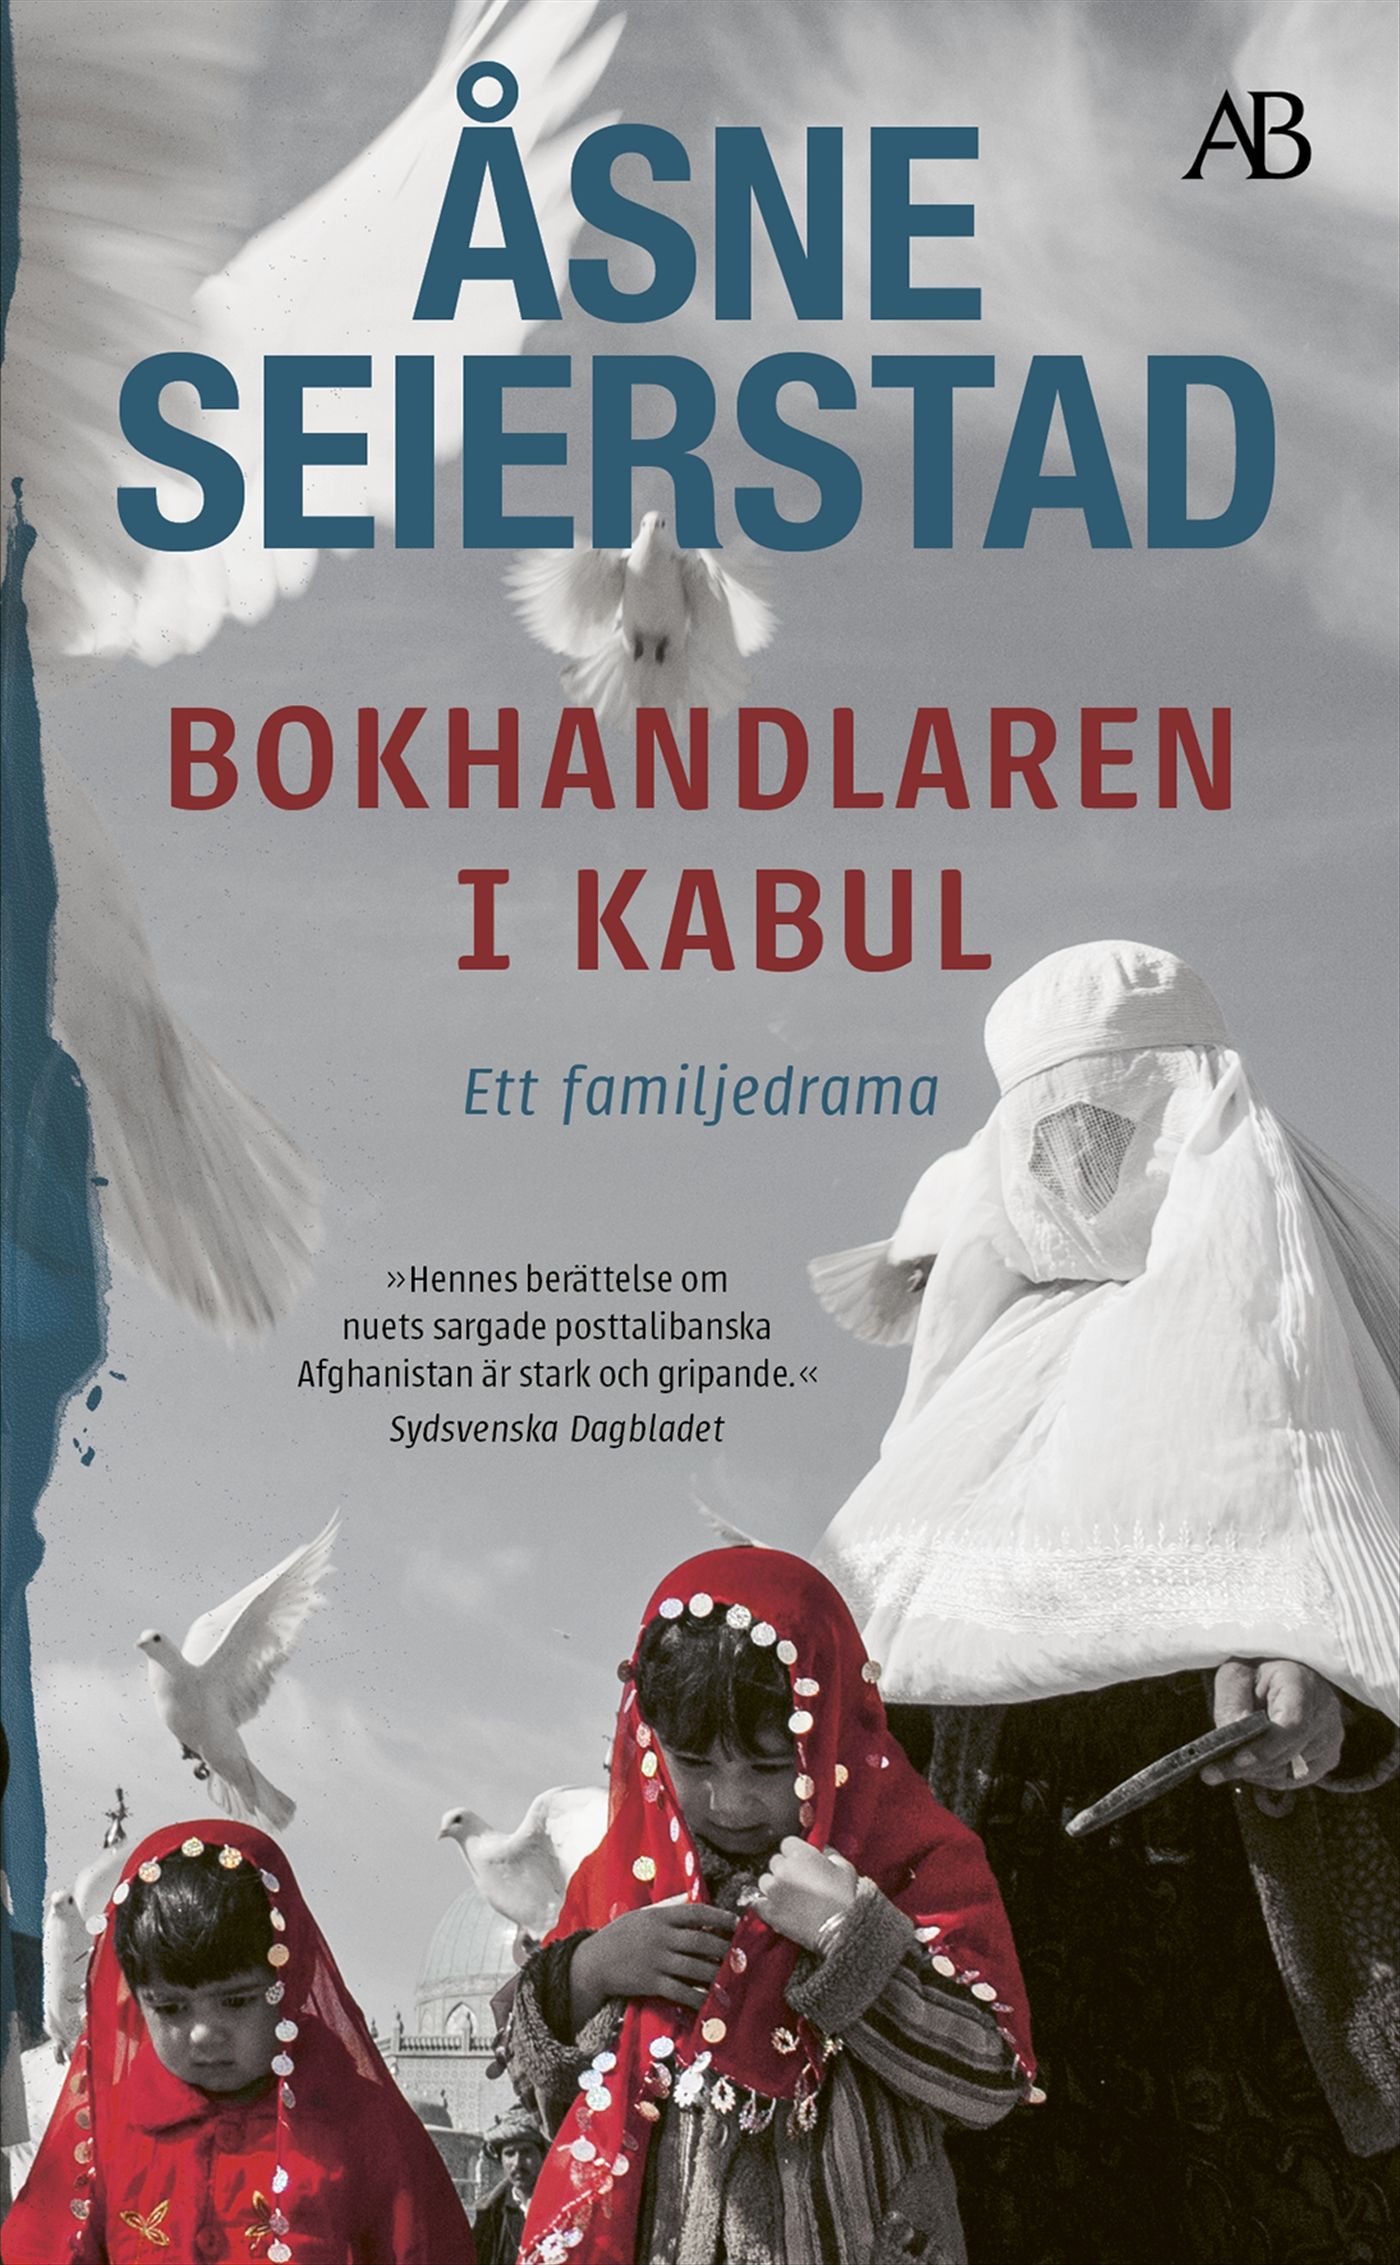 Bokhandlaren i Kabul, e-bok av Åsne Seierstad